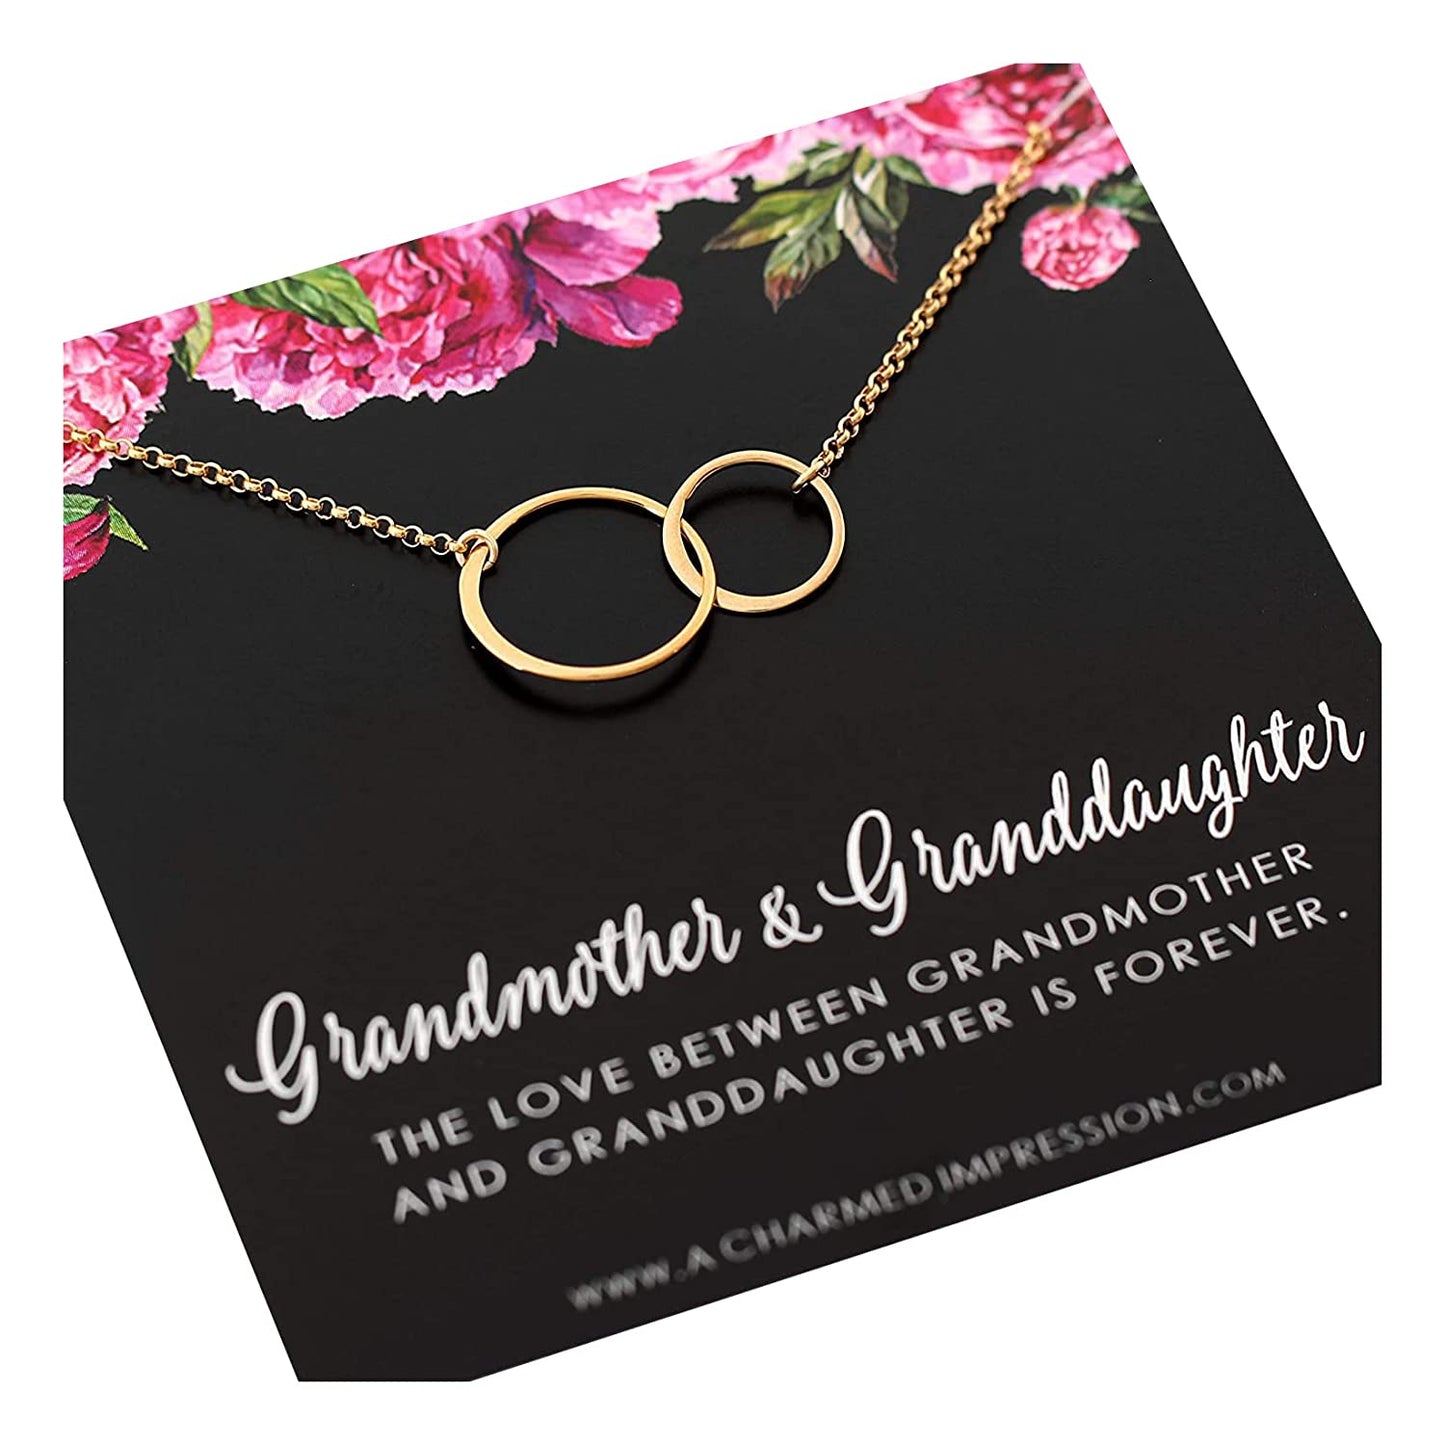 Grandmother and Granddaughter Gifts • 14k Gold Circle Necklace • Gift for Grandmother Granddaughter • Unique Gifts for Grandma • Thoughtful Gifts for Women Girls • Sentimental Keepsake Necklaces